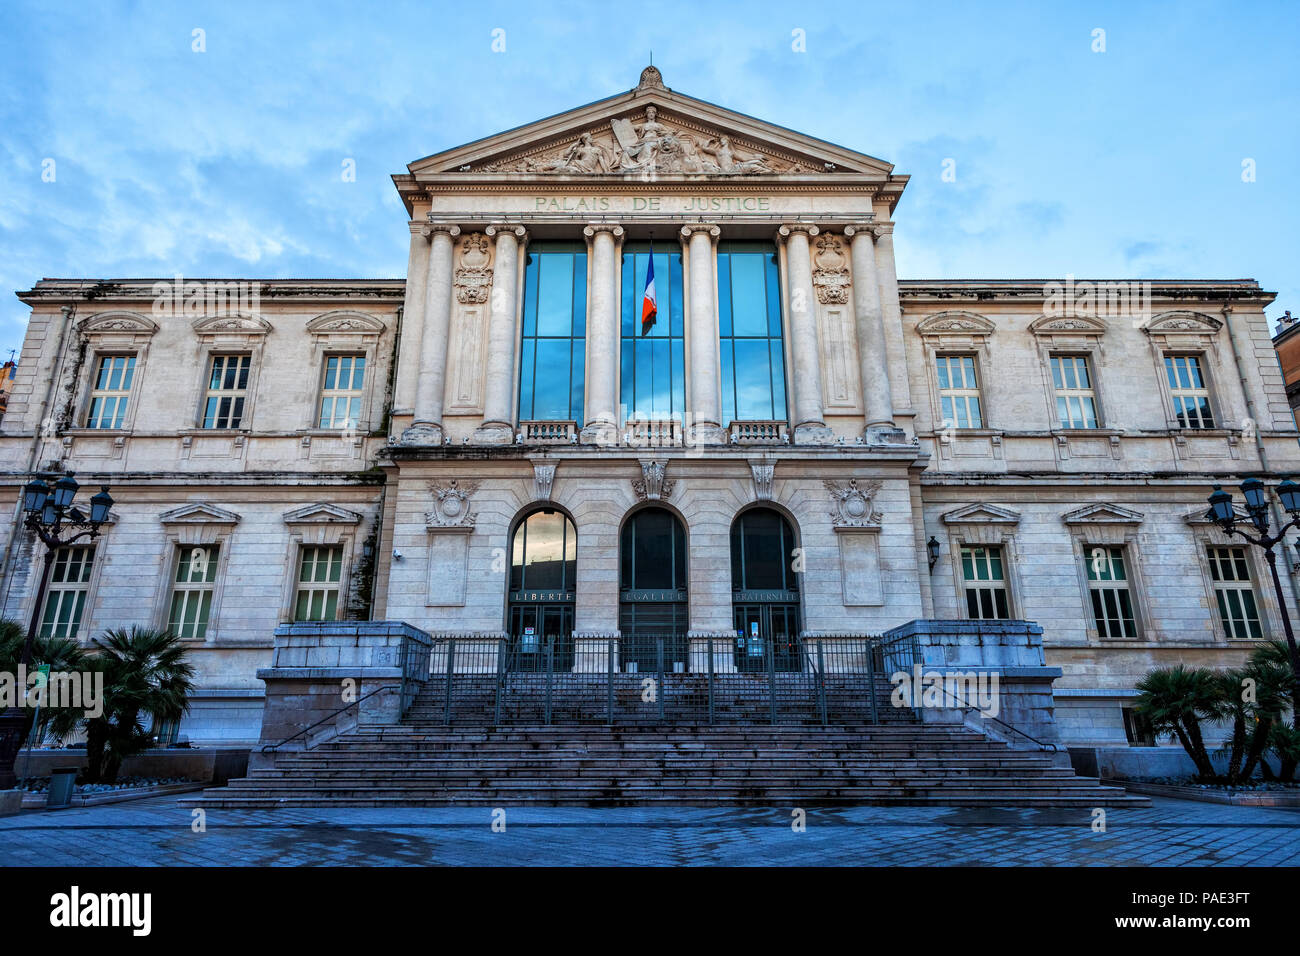 Frankreich, Nizza, Courthouse - Palais de Justice, neoklassischen Stil aus dem 19. Jahrhundert Stockfoto